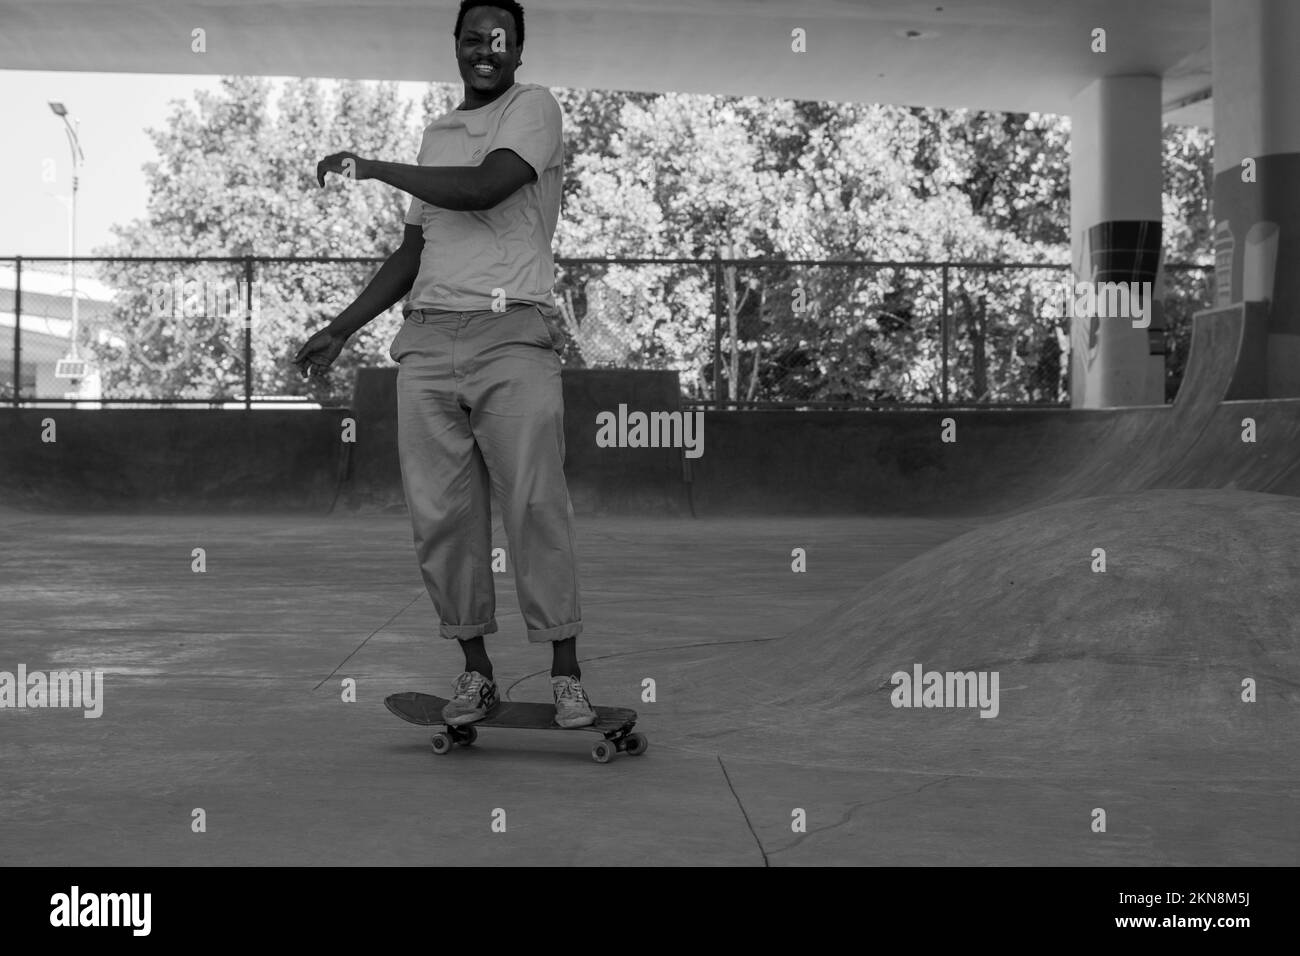 man skating in the skatepark Stock Photo